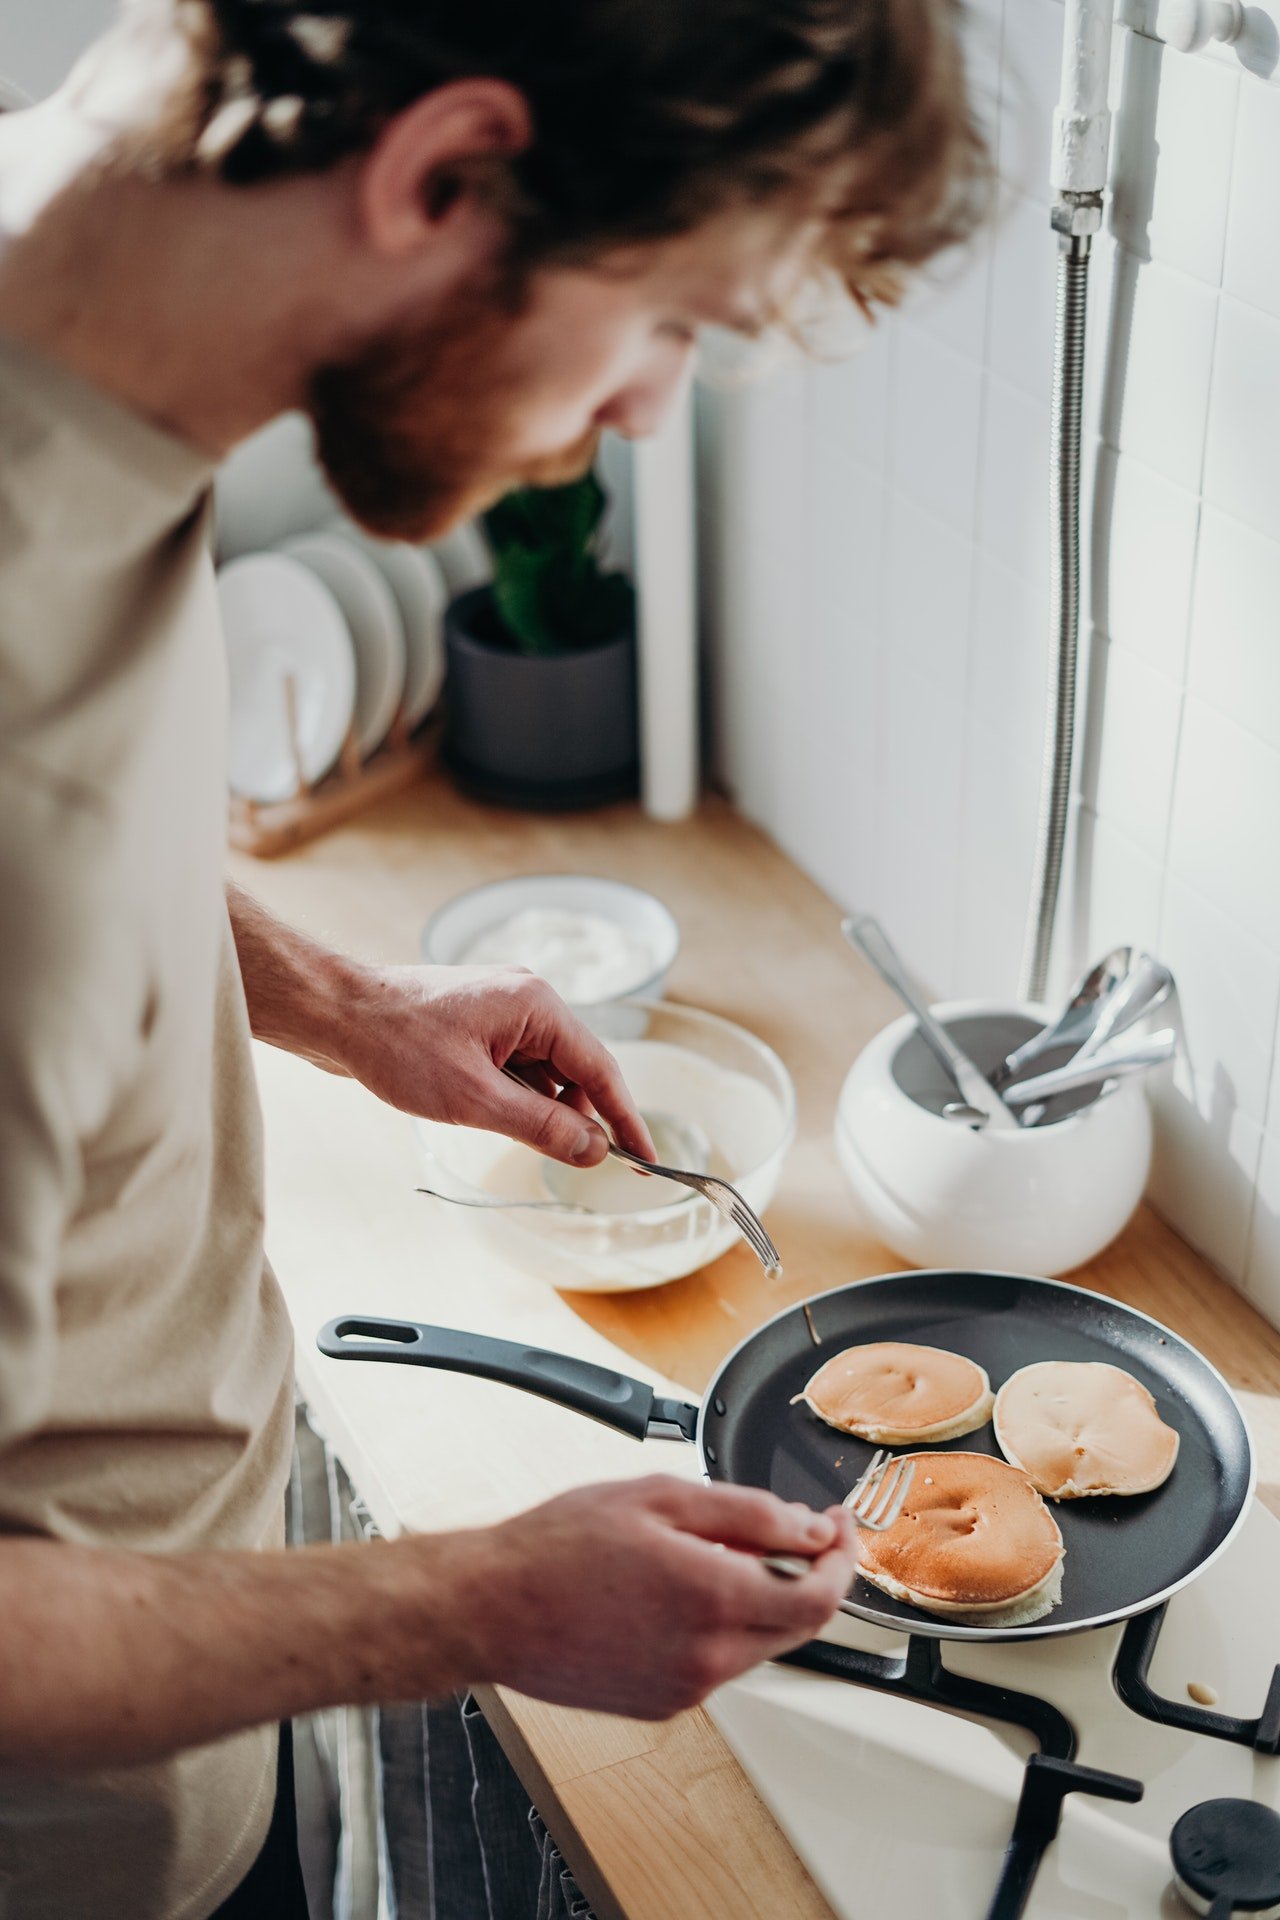 Susy brachte eine Pfannkuchenmischung mit, damit er seinen Kindern Frühstück machen konnte. | Quelle: Pexels